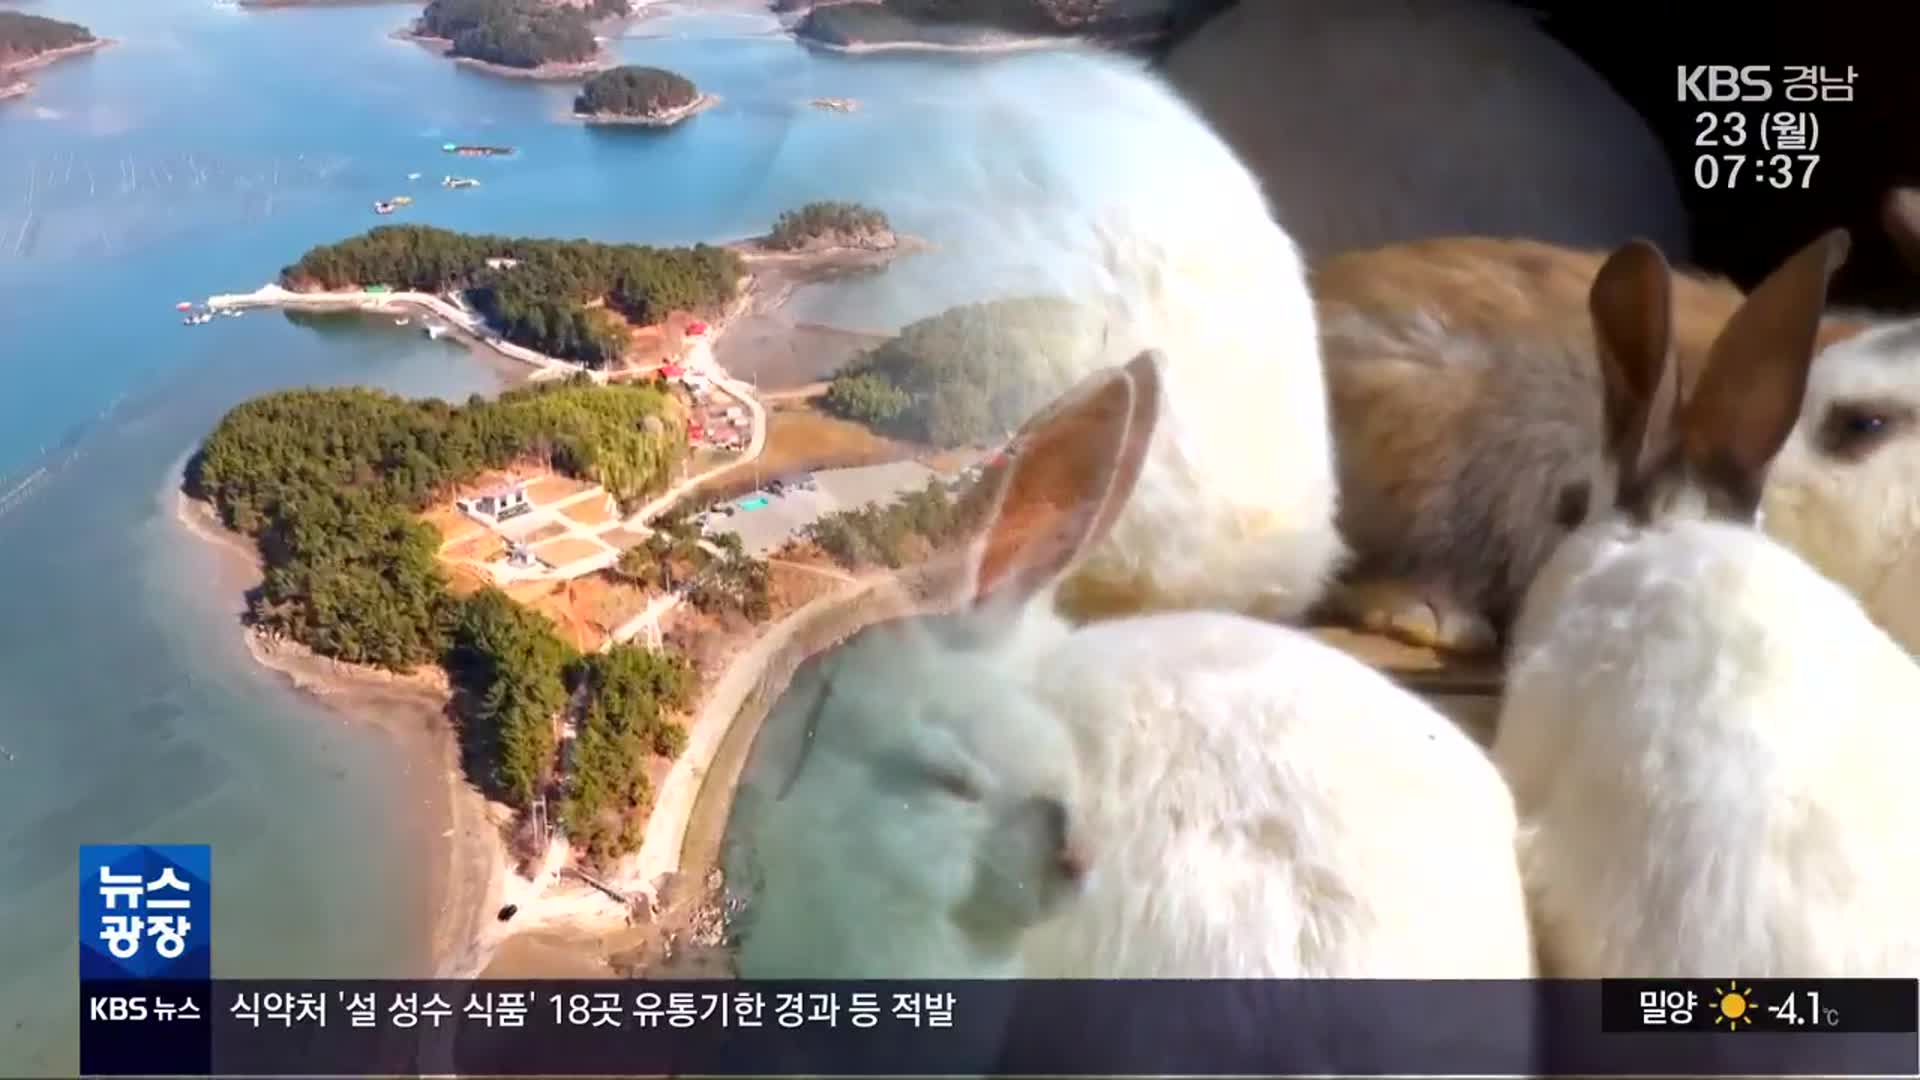 [영상] 토끼해, 계묘년 토끼섬